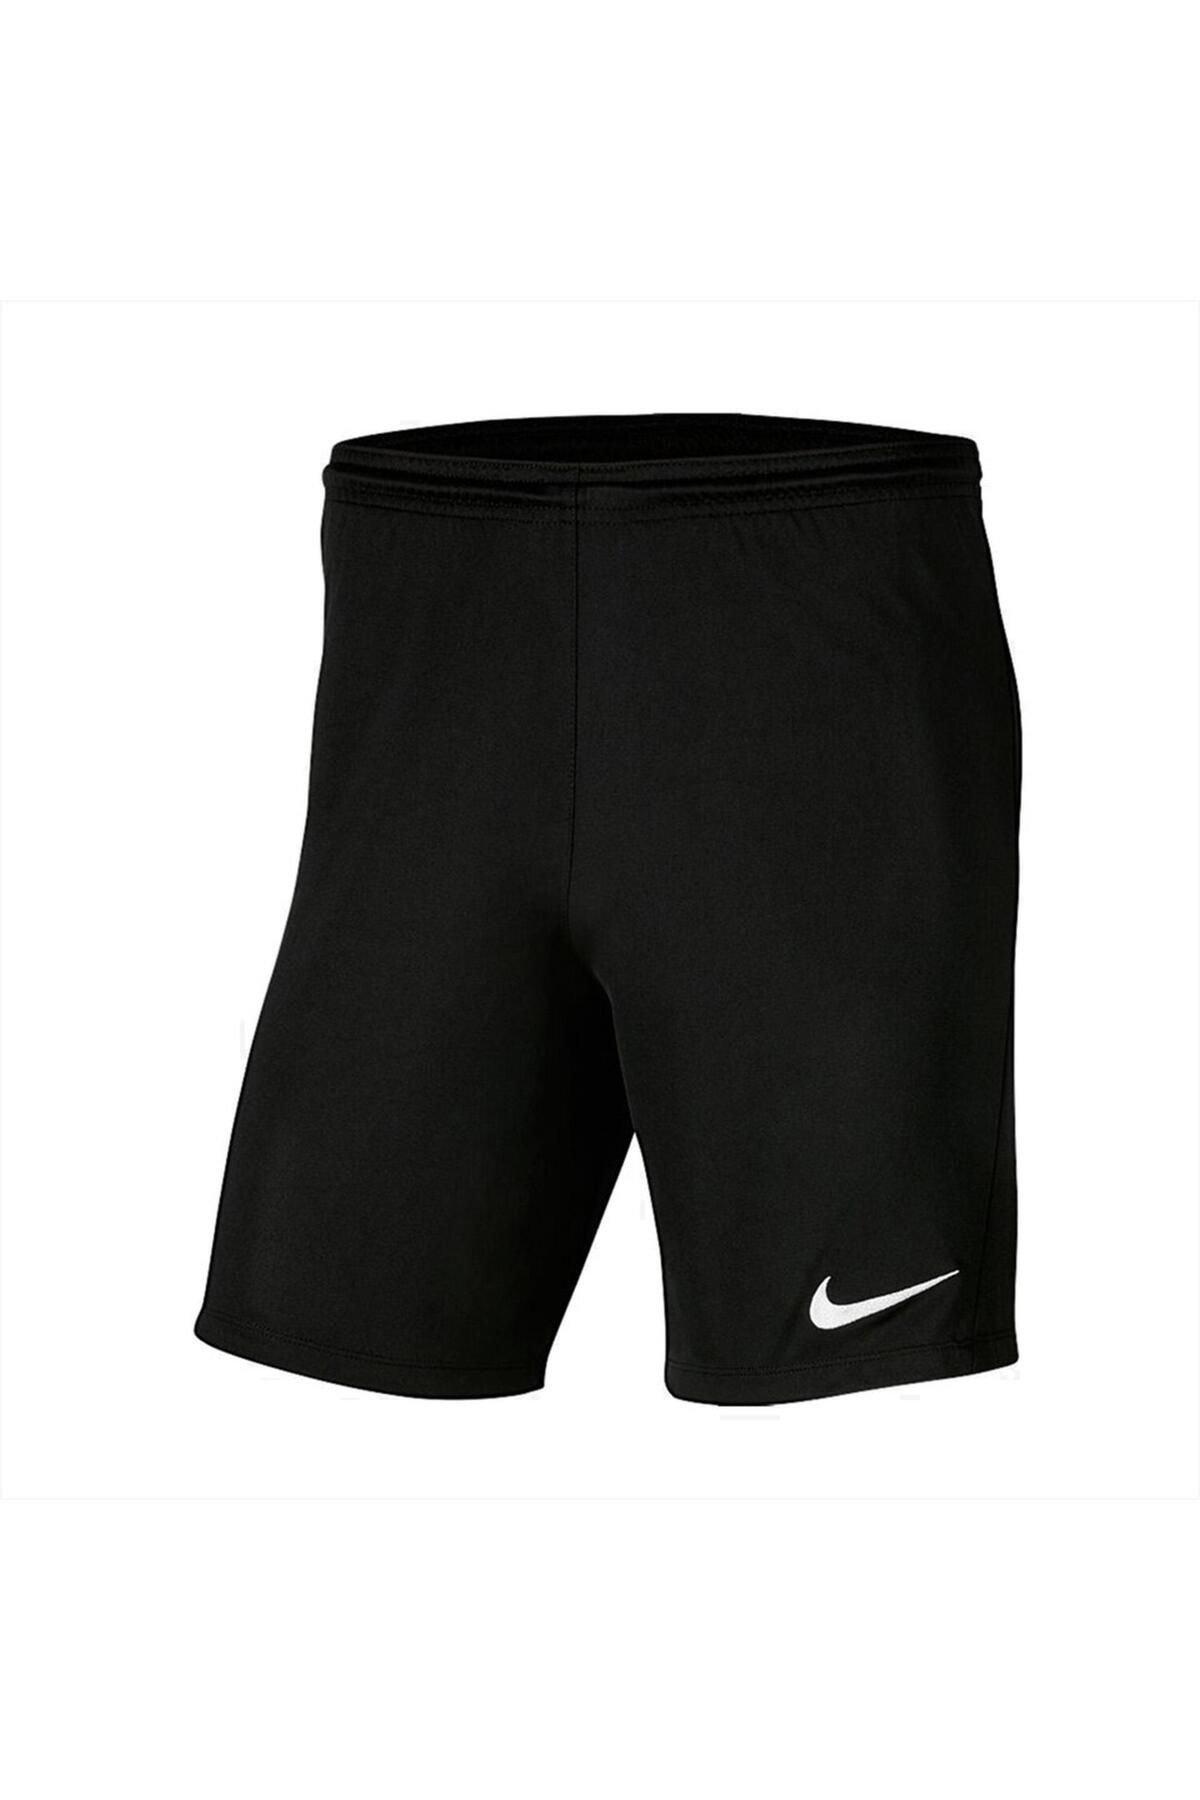 Nike Dri-fit Dry Park Iıı Bv6855 Erkek Şort Siyah